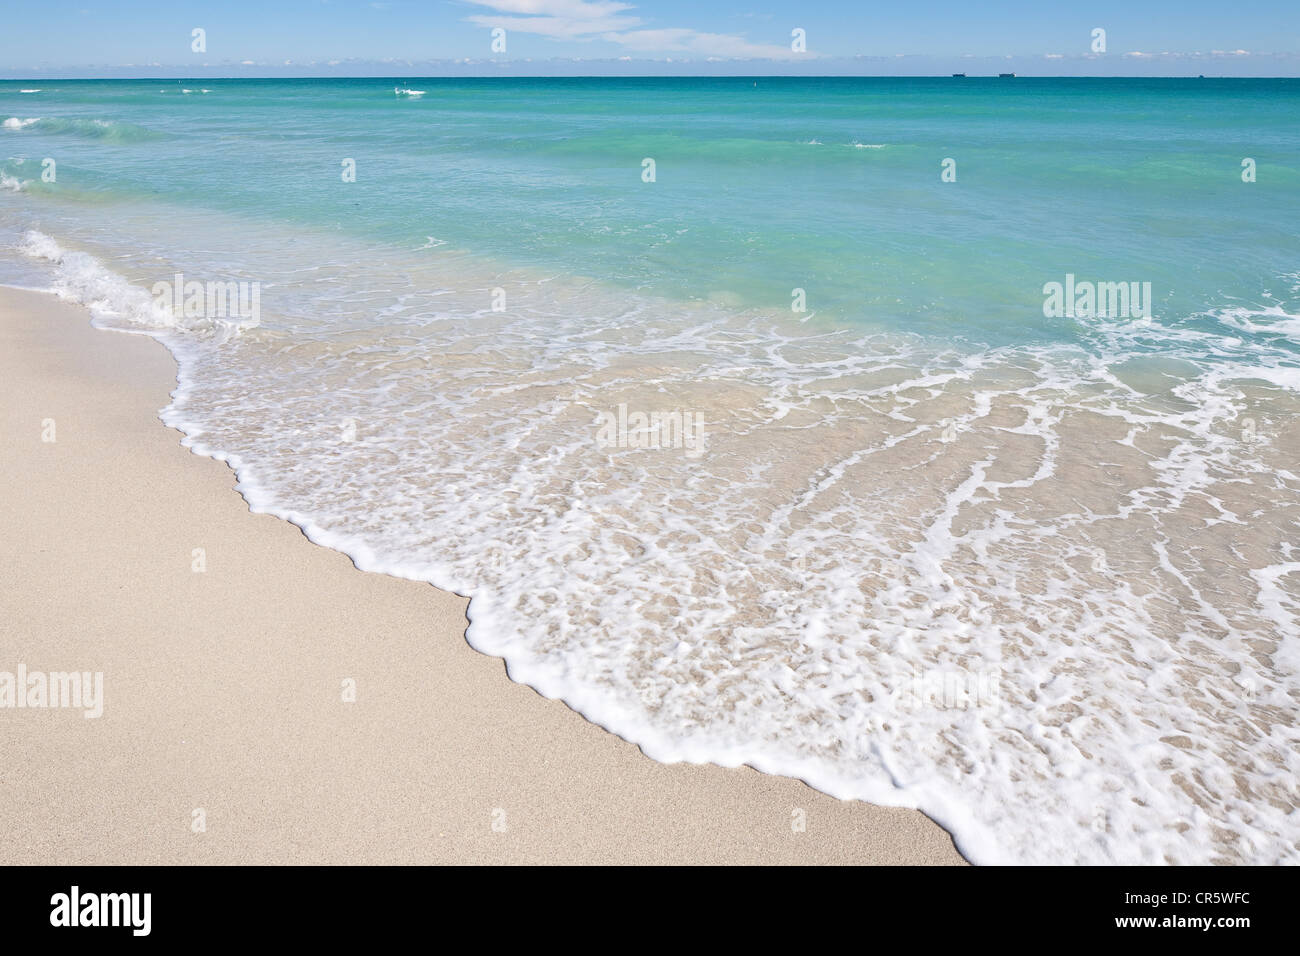 United States, Florida, Miami Beach, South Beach, plage et l'océan Atlantique Banque D'Images